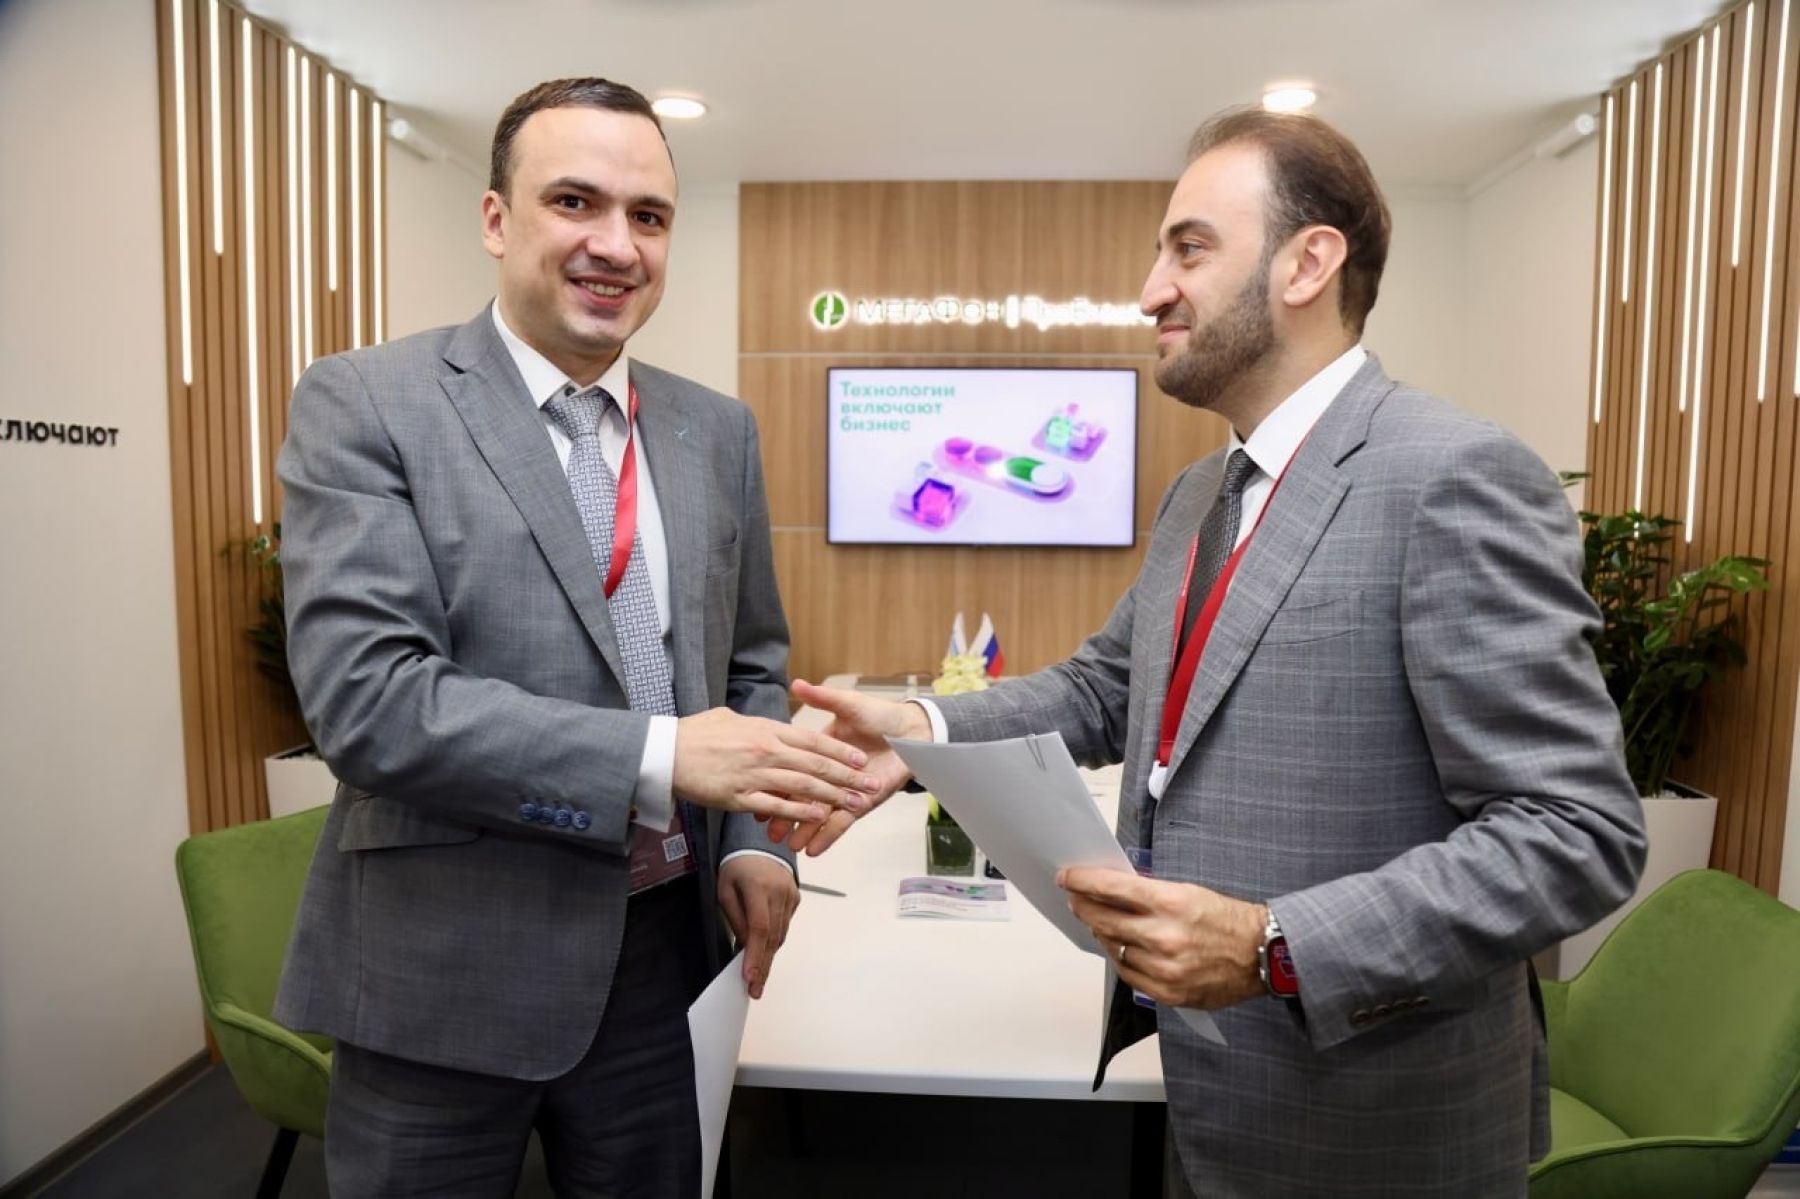 МегаФон и Свердловская область договорились о цифровизации региона